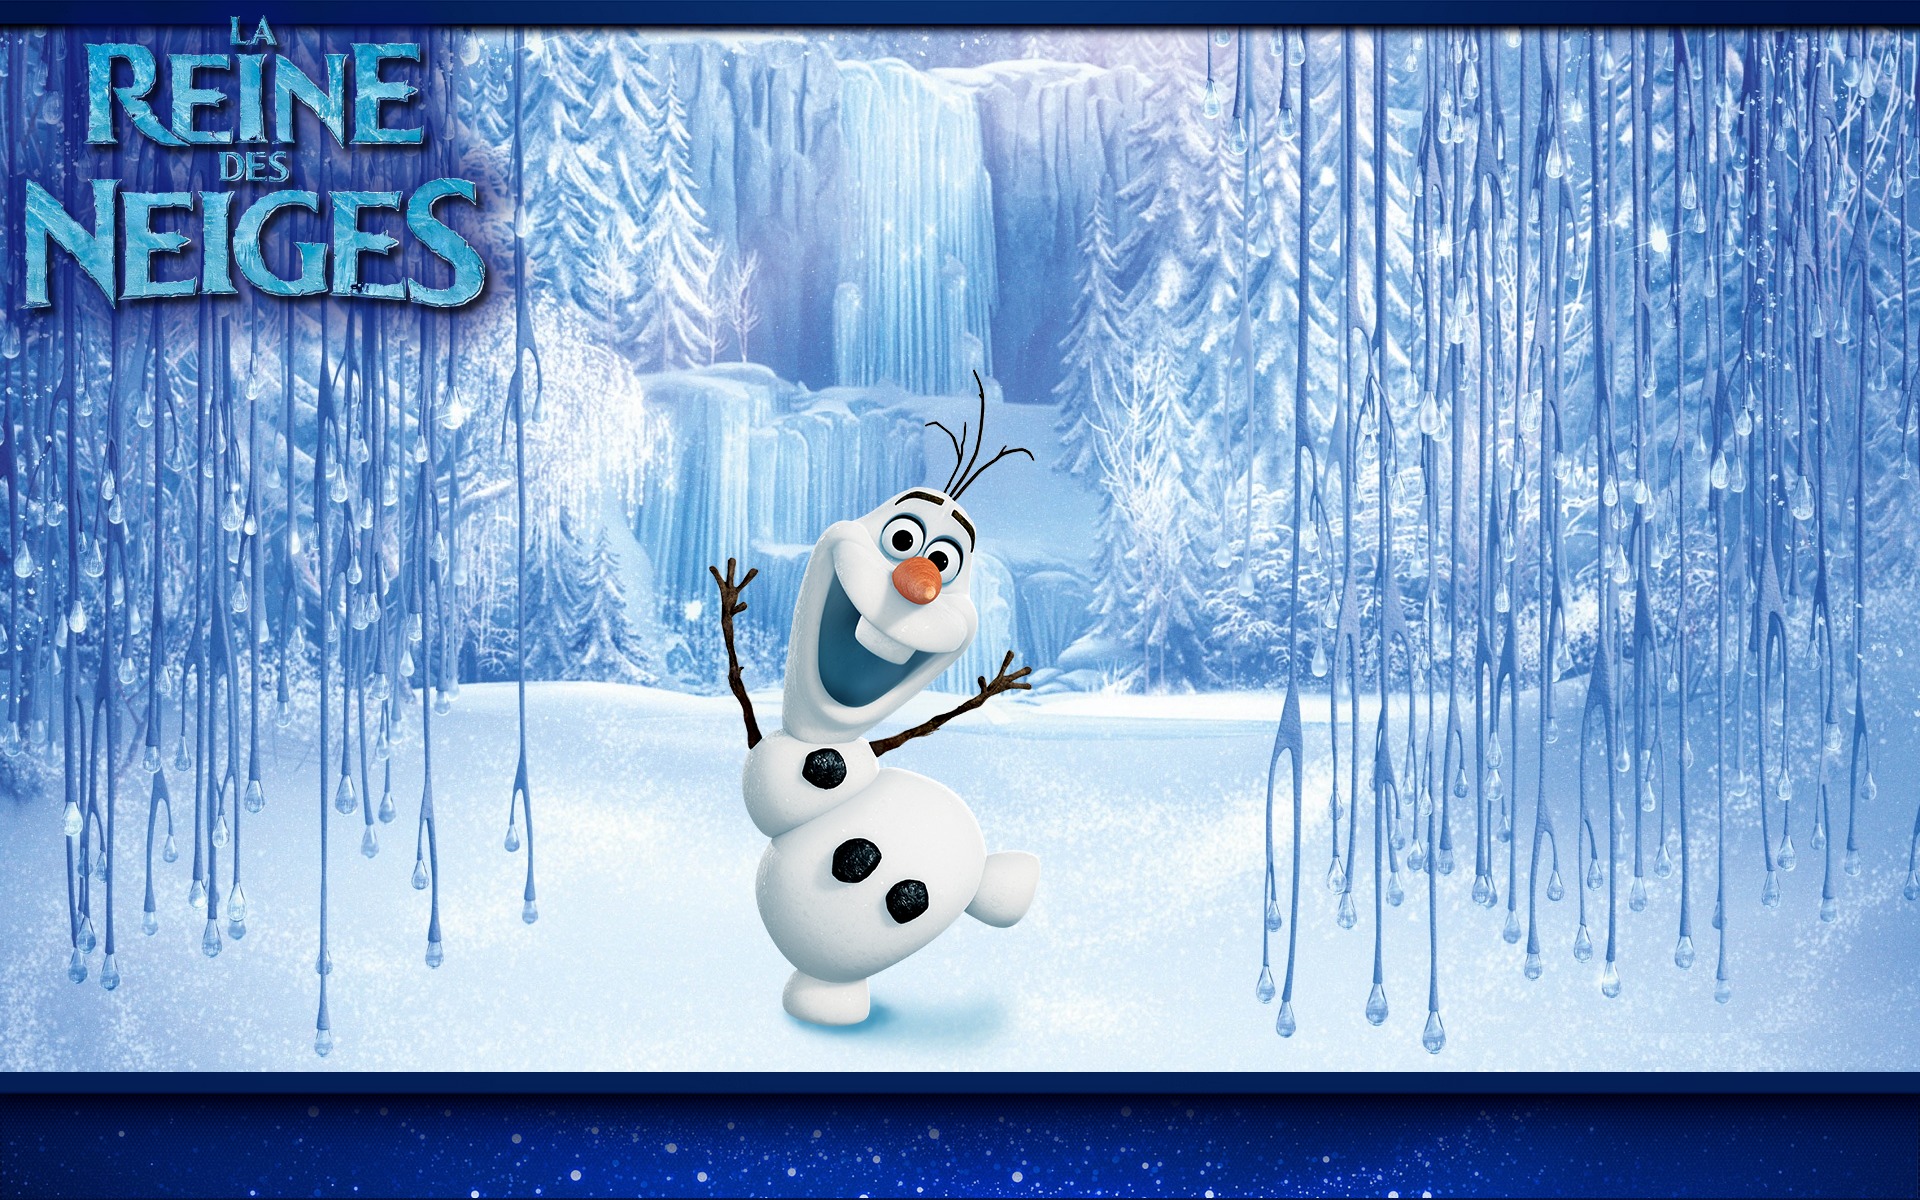 Olaf le bonhomme de neige dans La Reine des neiges Fond d'écran - Image arrière-plan - Wallpaper Favorisxp